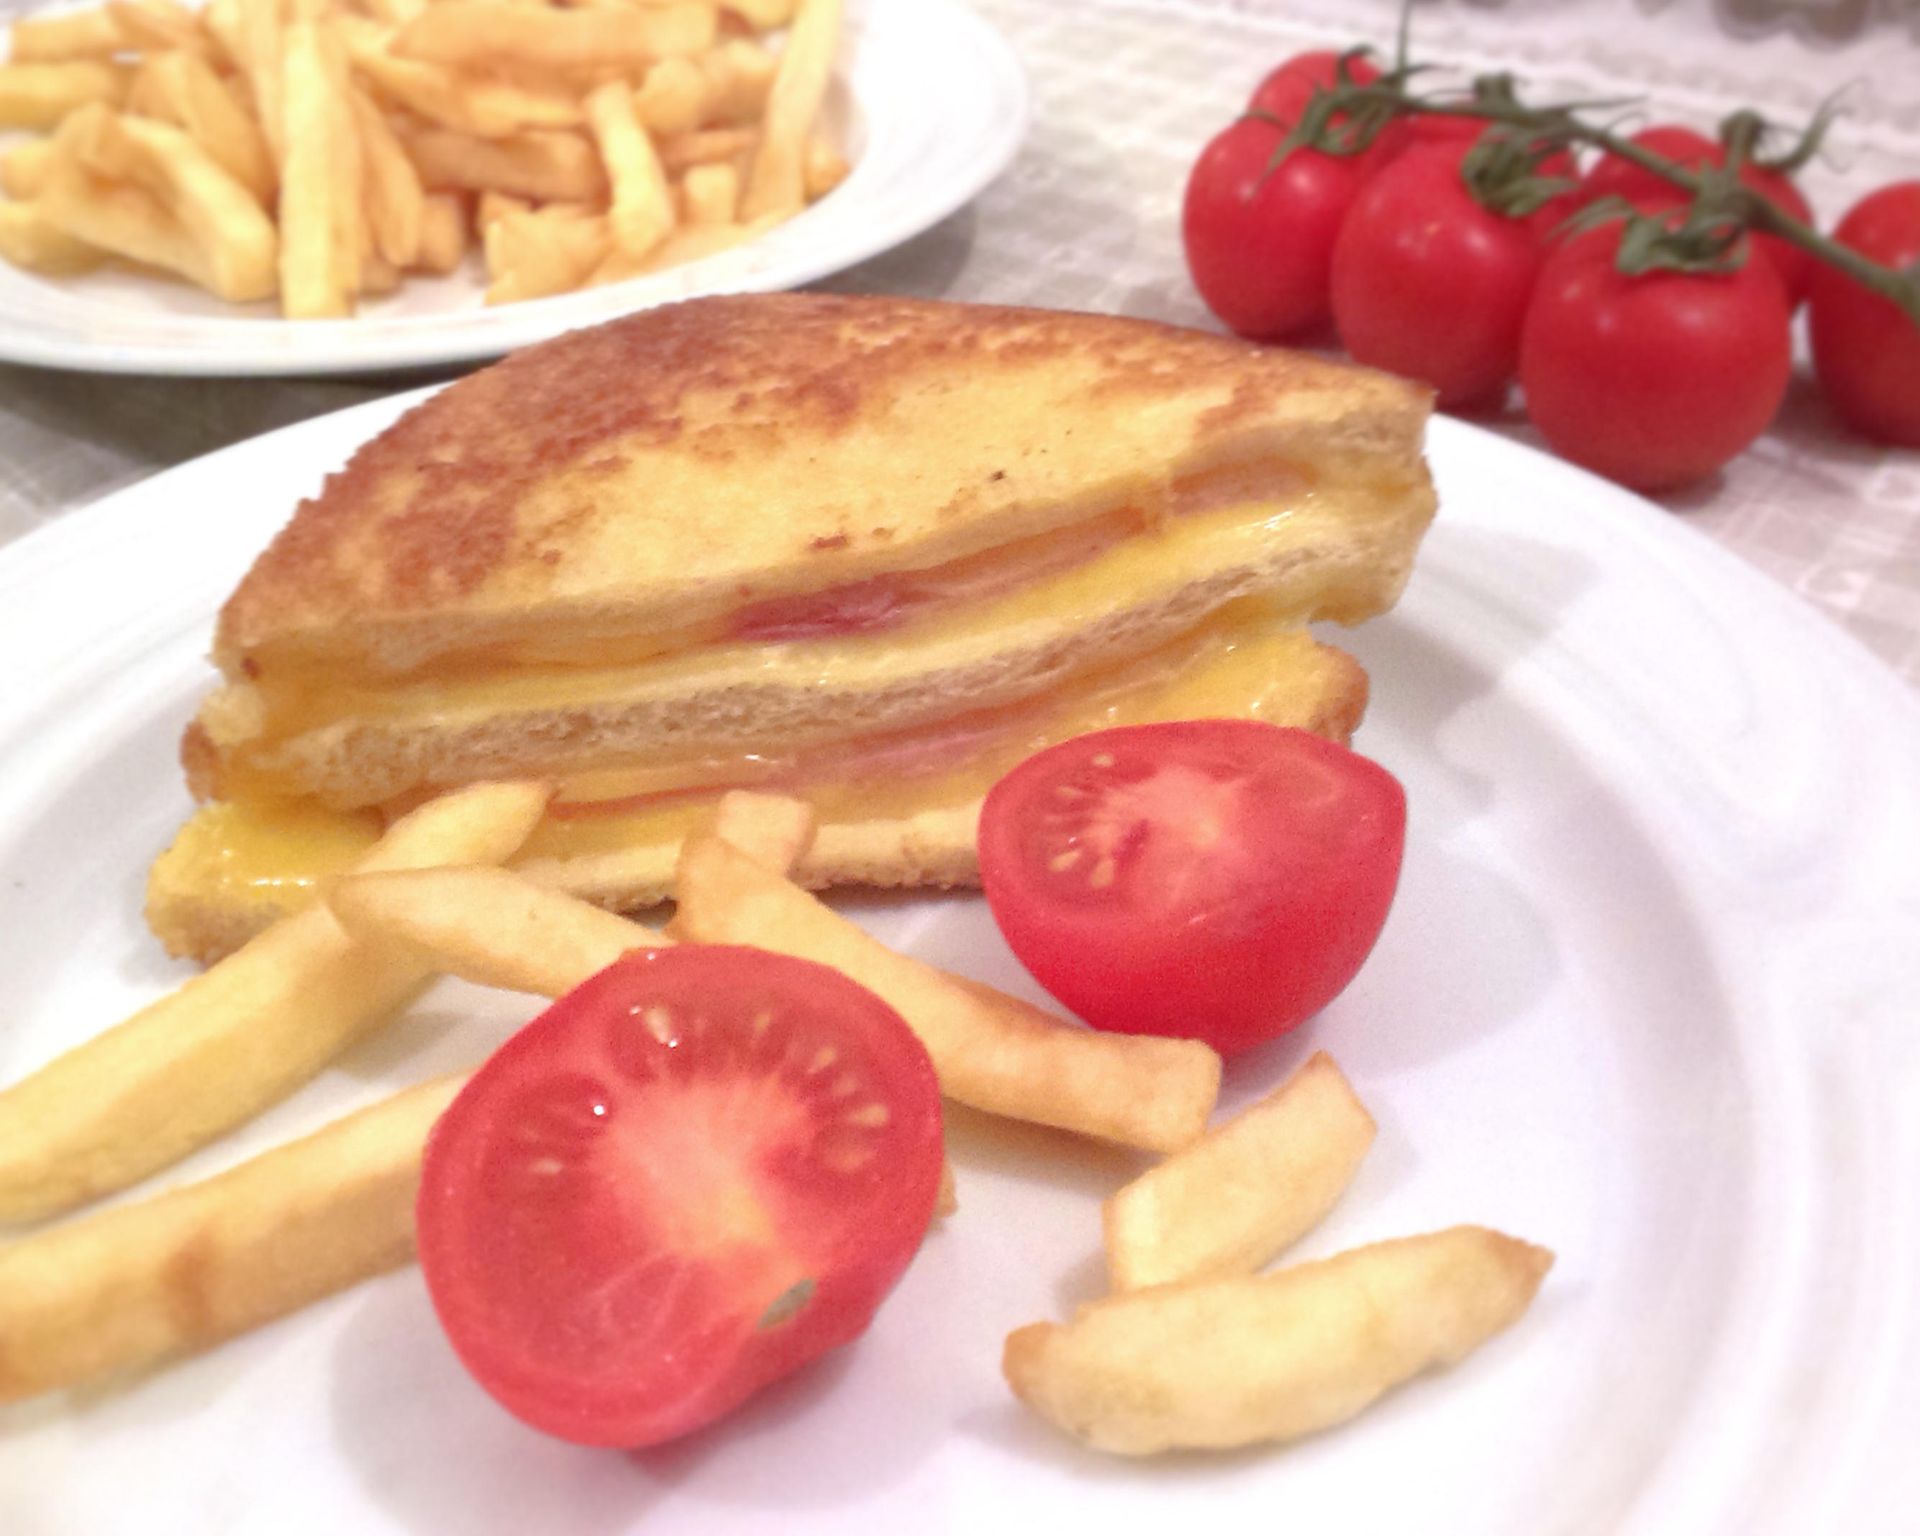 Sendvič plnený, v ňom šunka a syr, na tanieri aj hranolky a cherry paradajky, v pozadí tiež